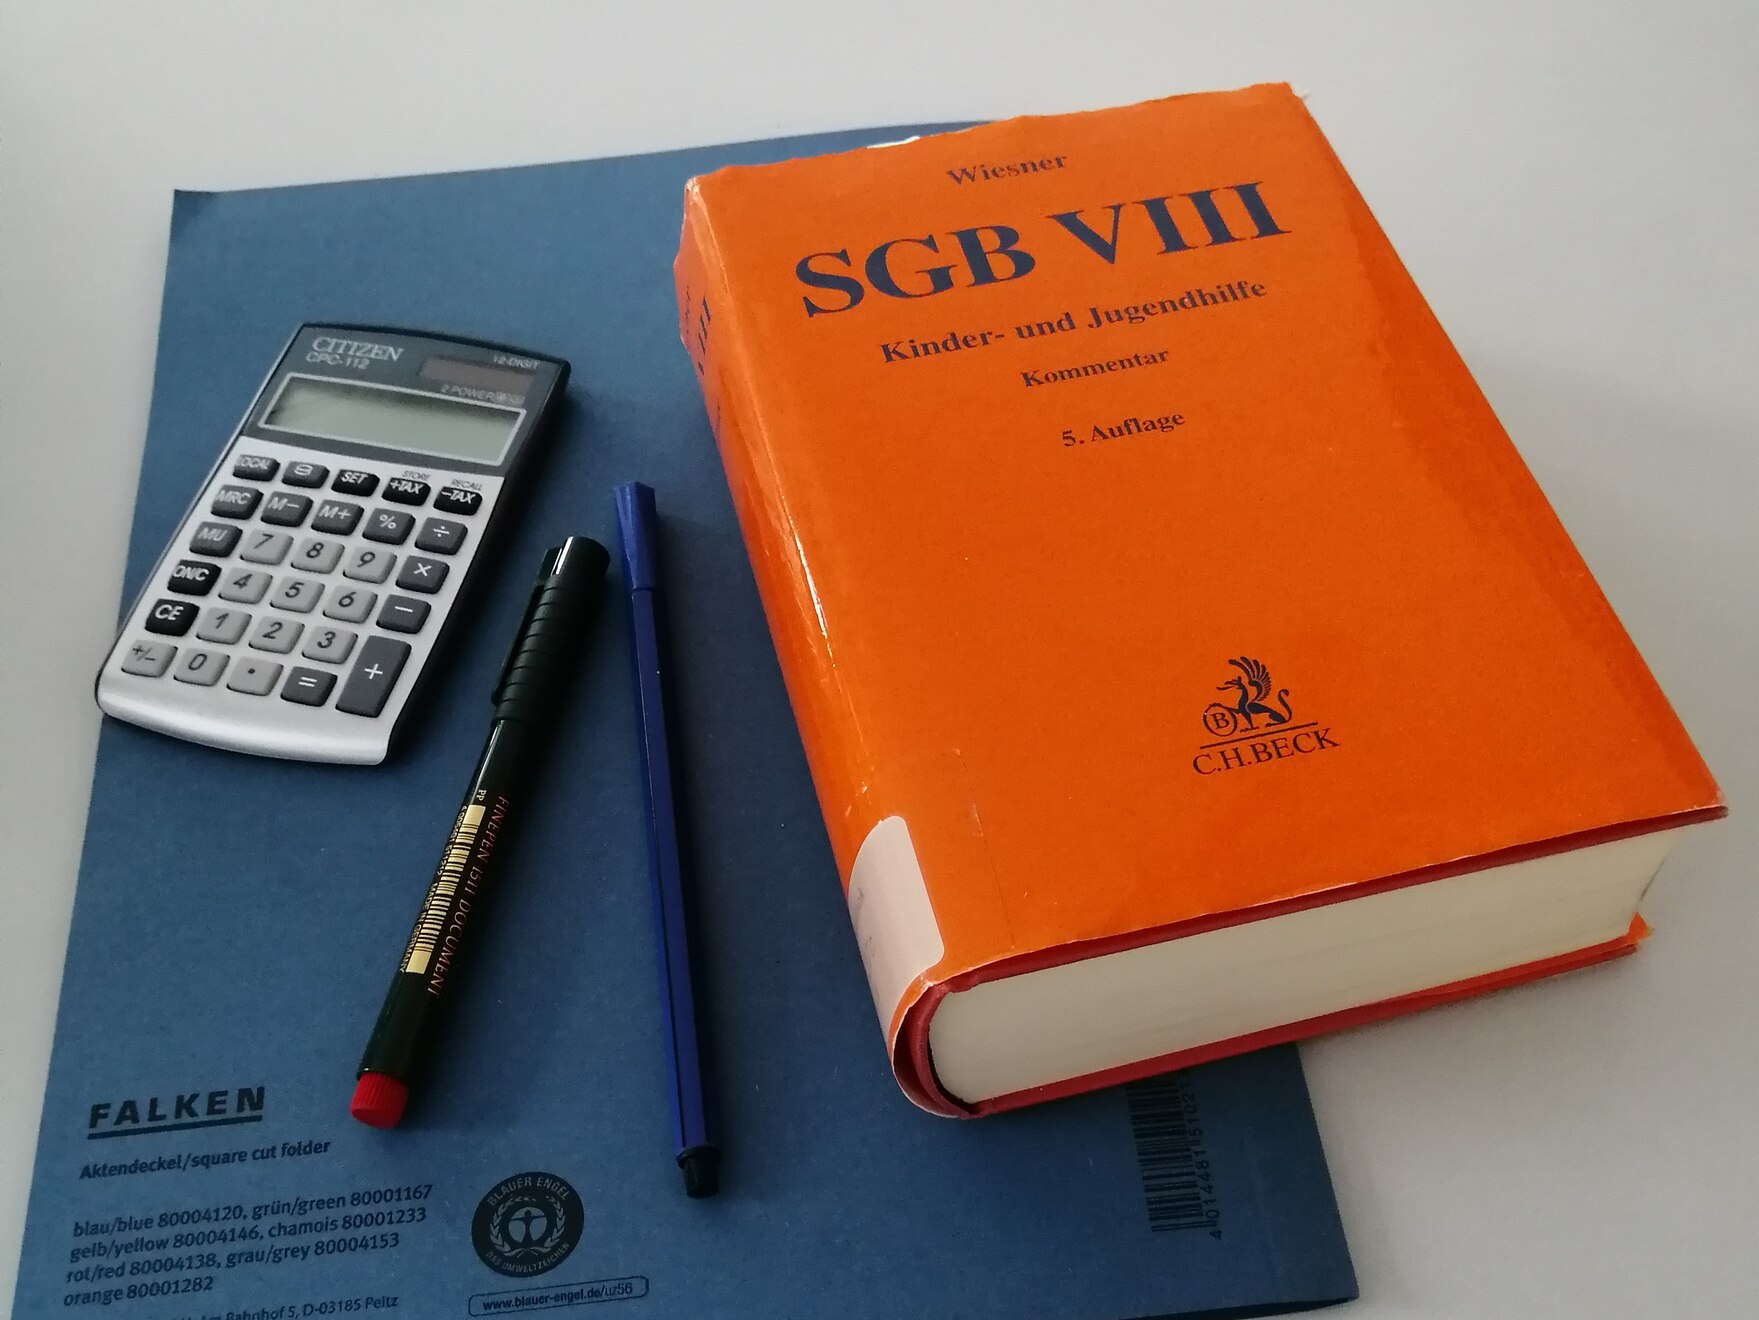 Buch SGB VIII auf einem Schreibtisch neben Taschenrechner und Bleistift